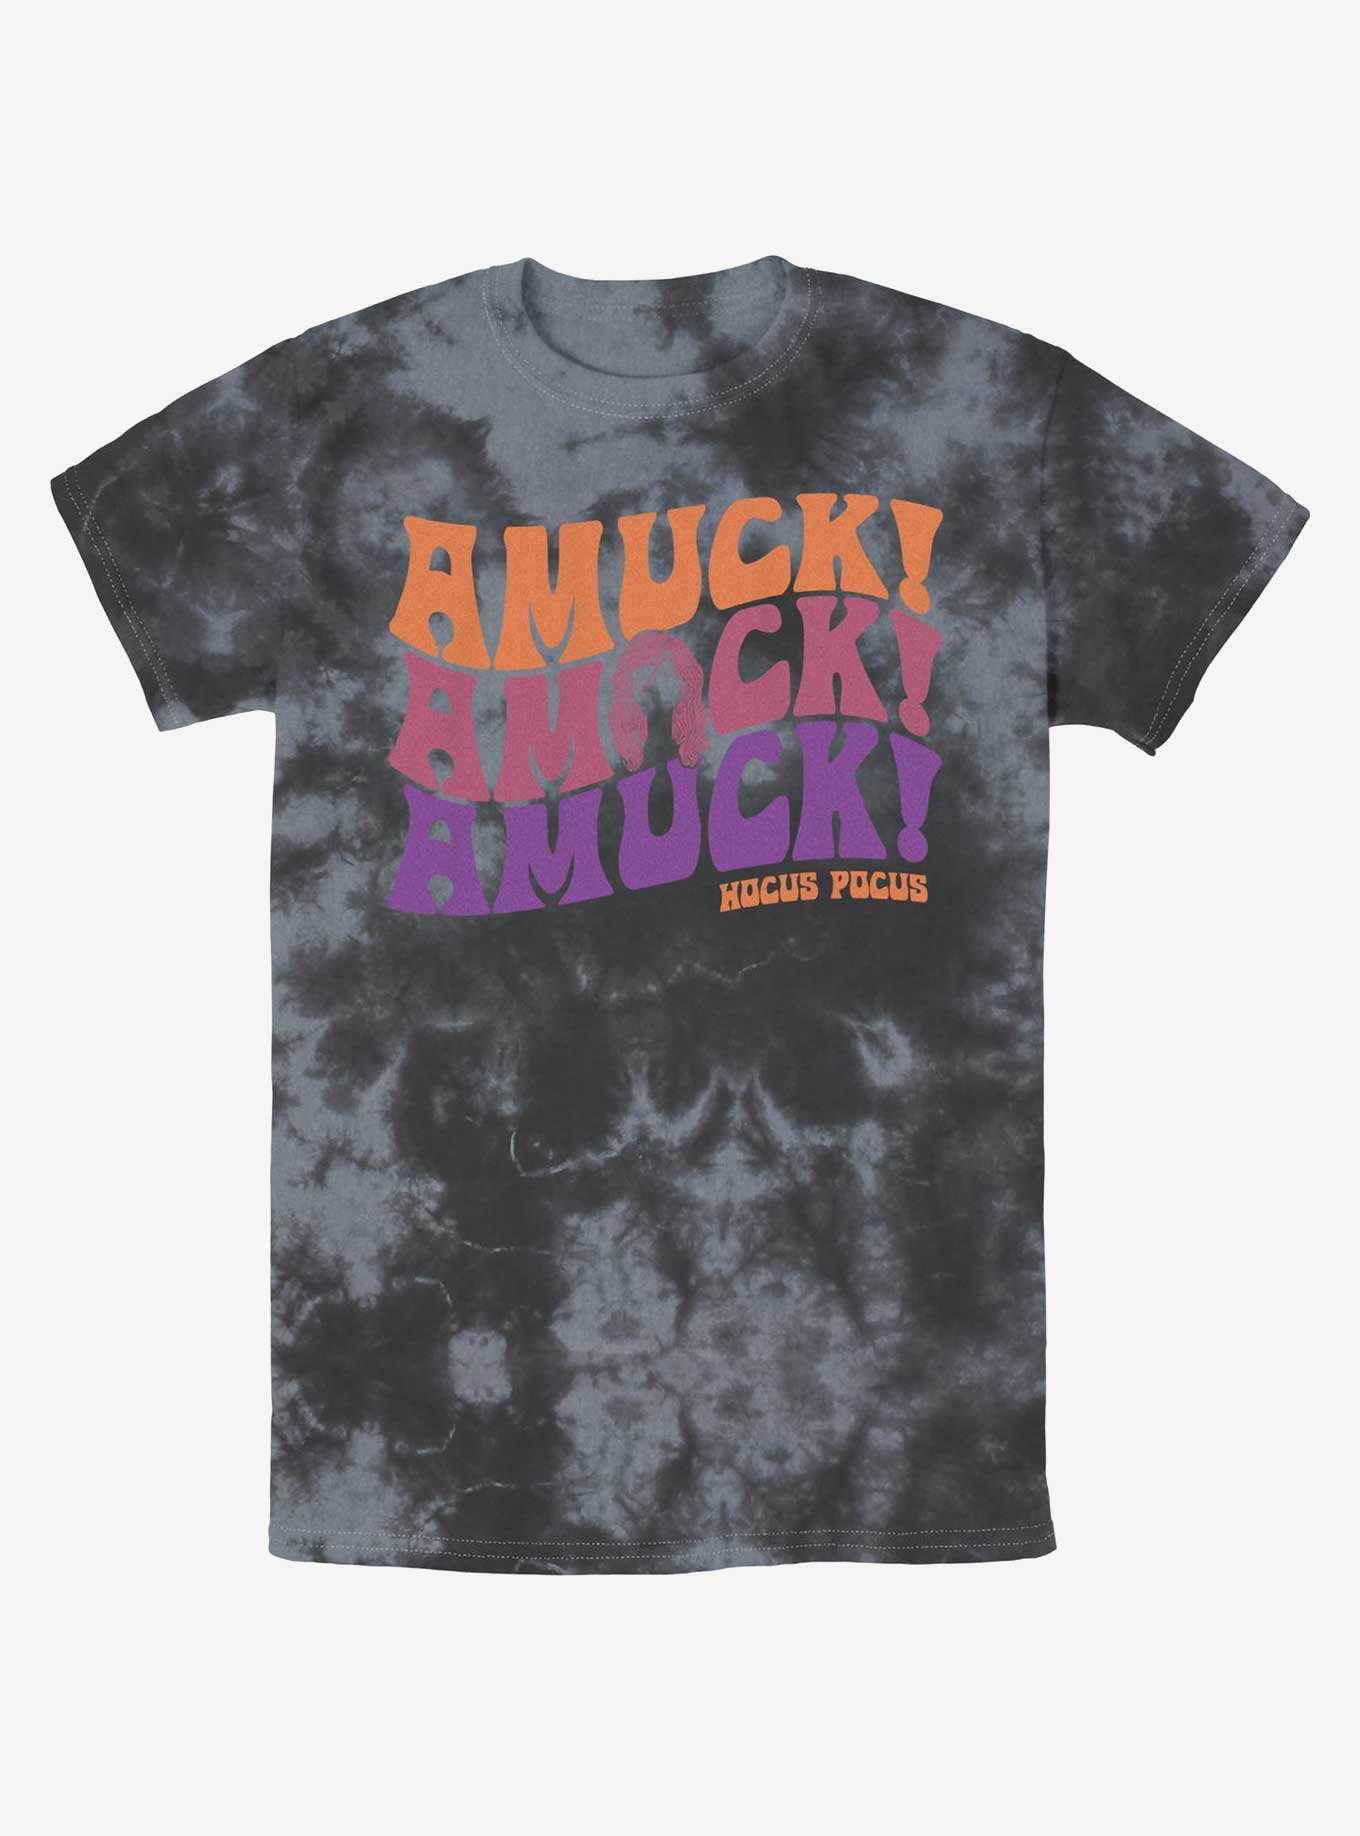 Disney Hocus Pocus Amuck, Amuck, Amuck! Tie-Dye T-Shirt, , hi-res